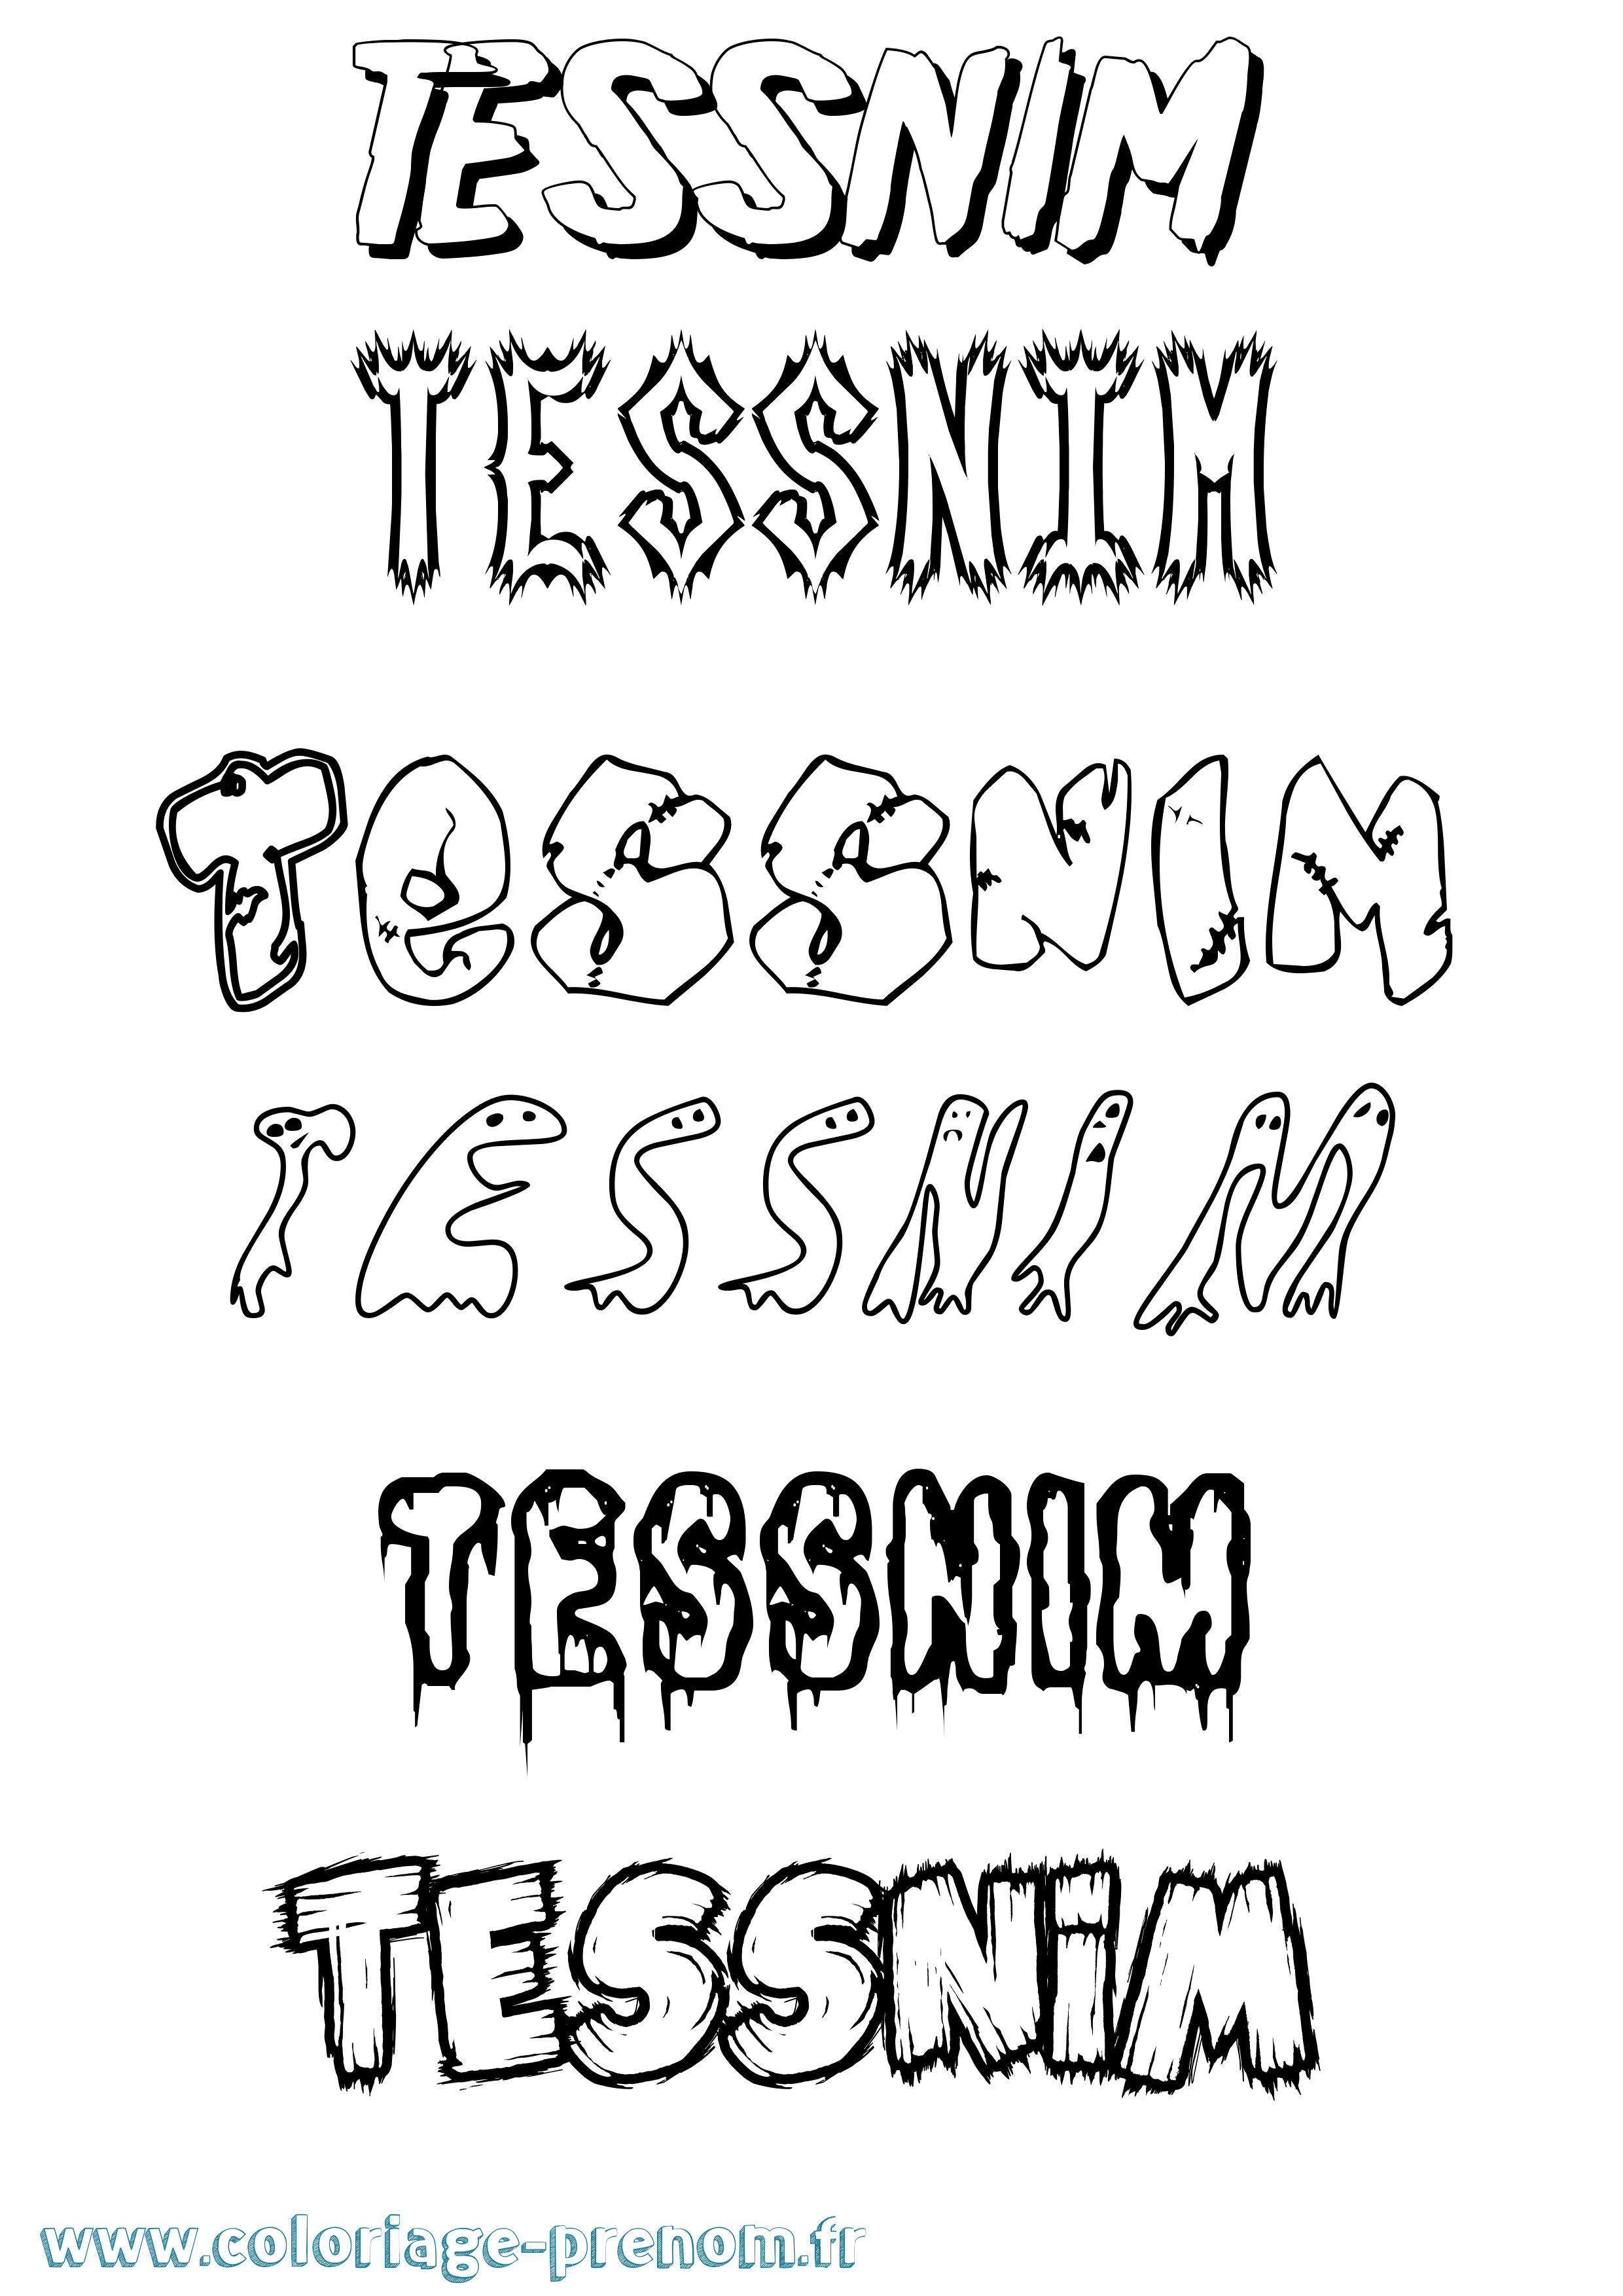 Coloriage prénom Tessnim Frisson